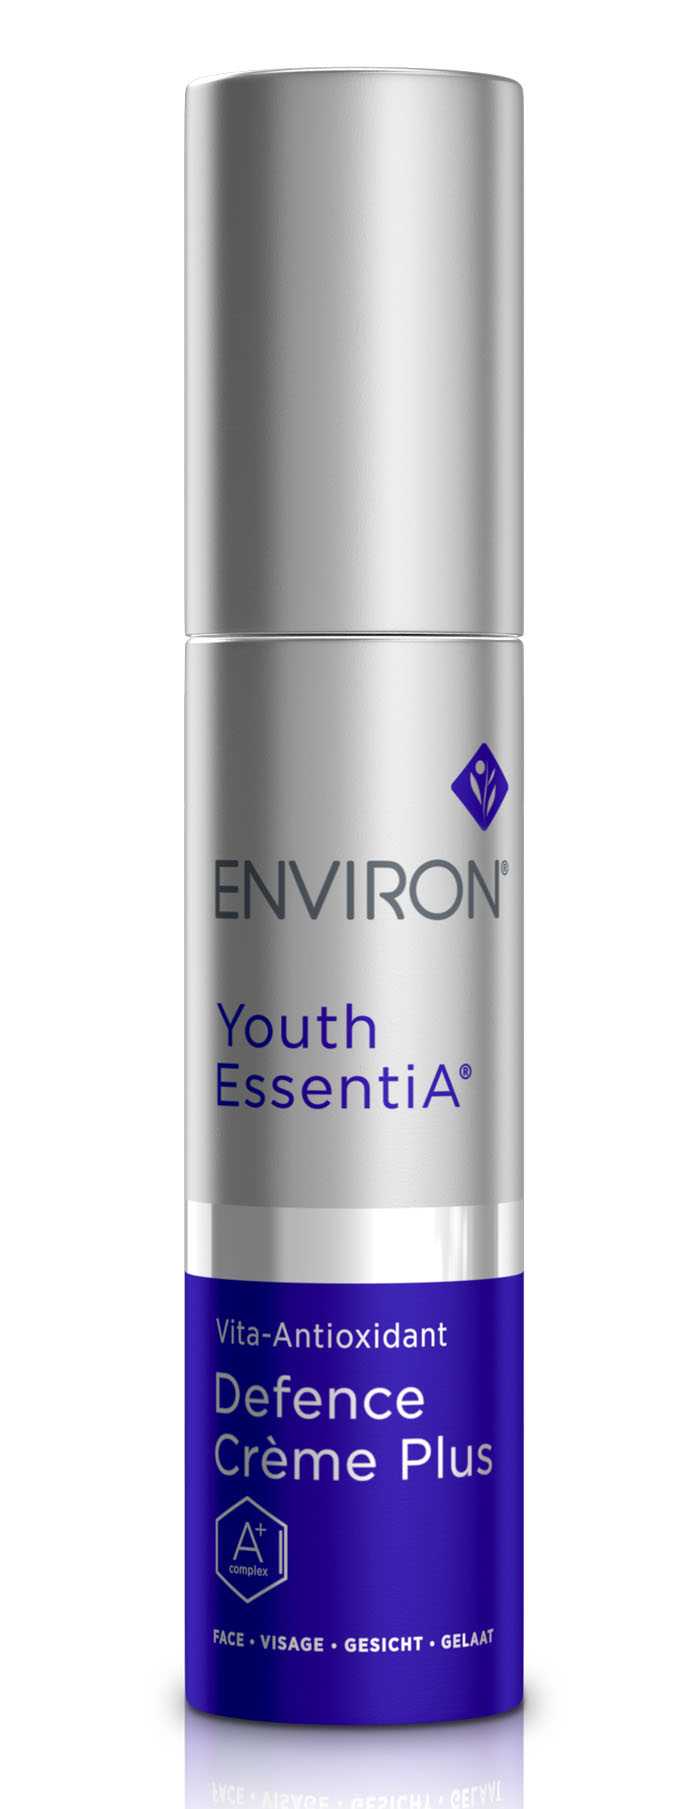 Youth EssentiA | Vita-Antioxidant Defence Creme Plus